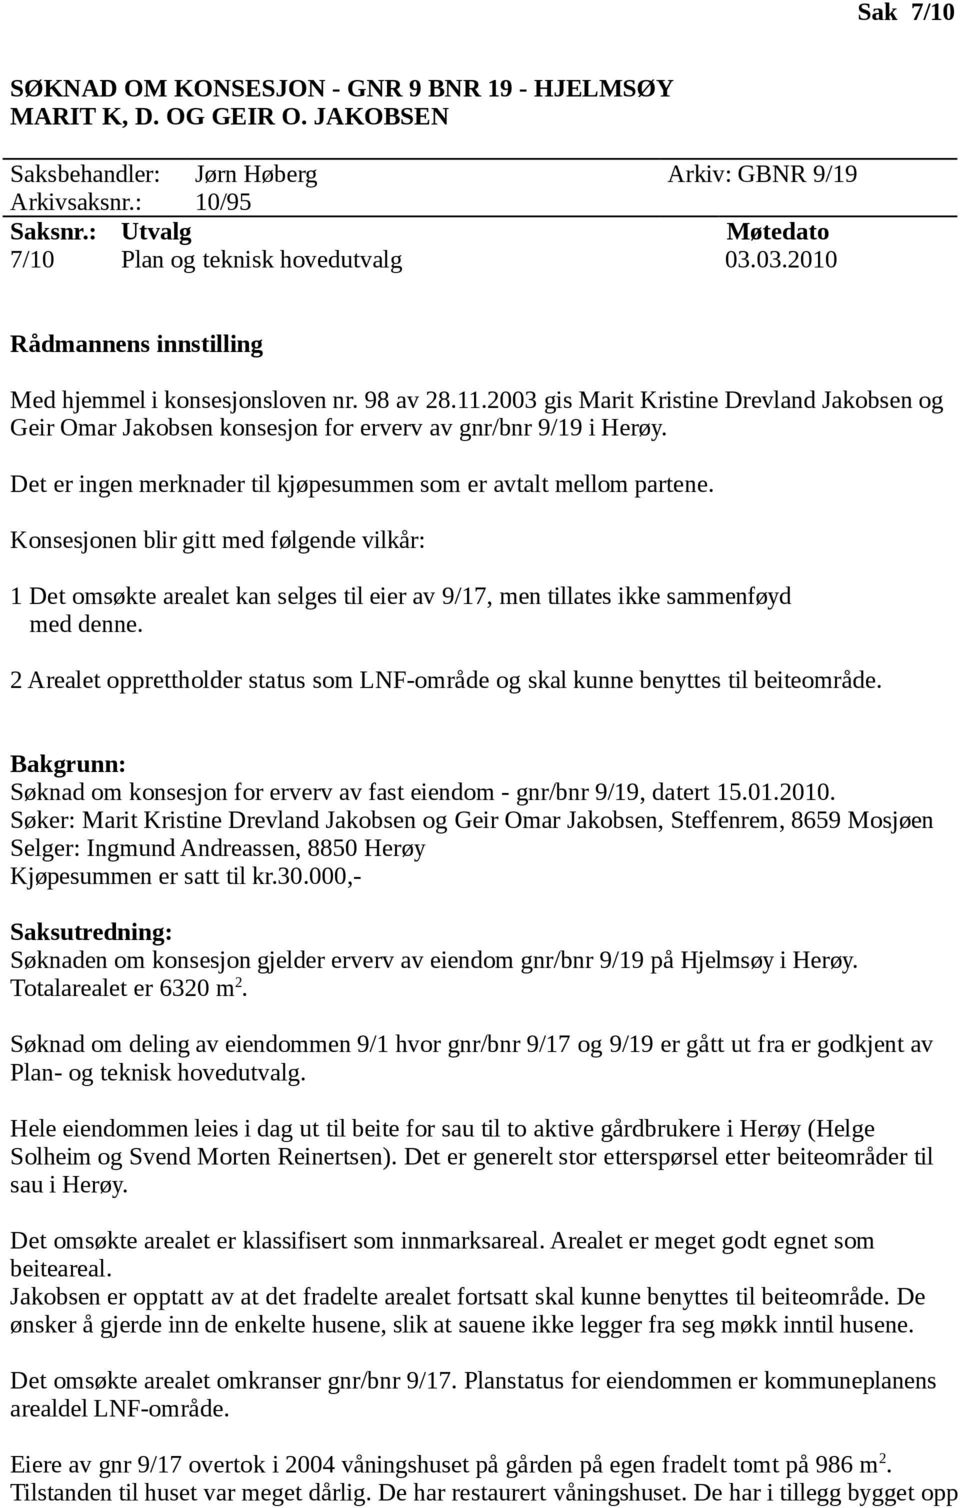 2003 gis Marit Kristine Drevland Jakobsen og Geir Omar Jakobsen konsesjon for erverv av gnr/bnr 9/19 i Herøy. Det er ingen merknader til kjøpesummen som er avtalt mellom partene.